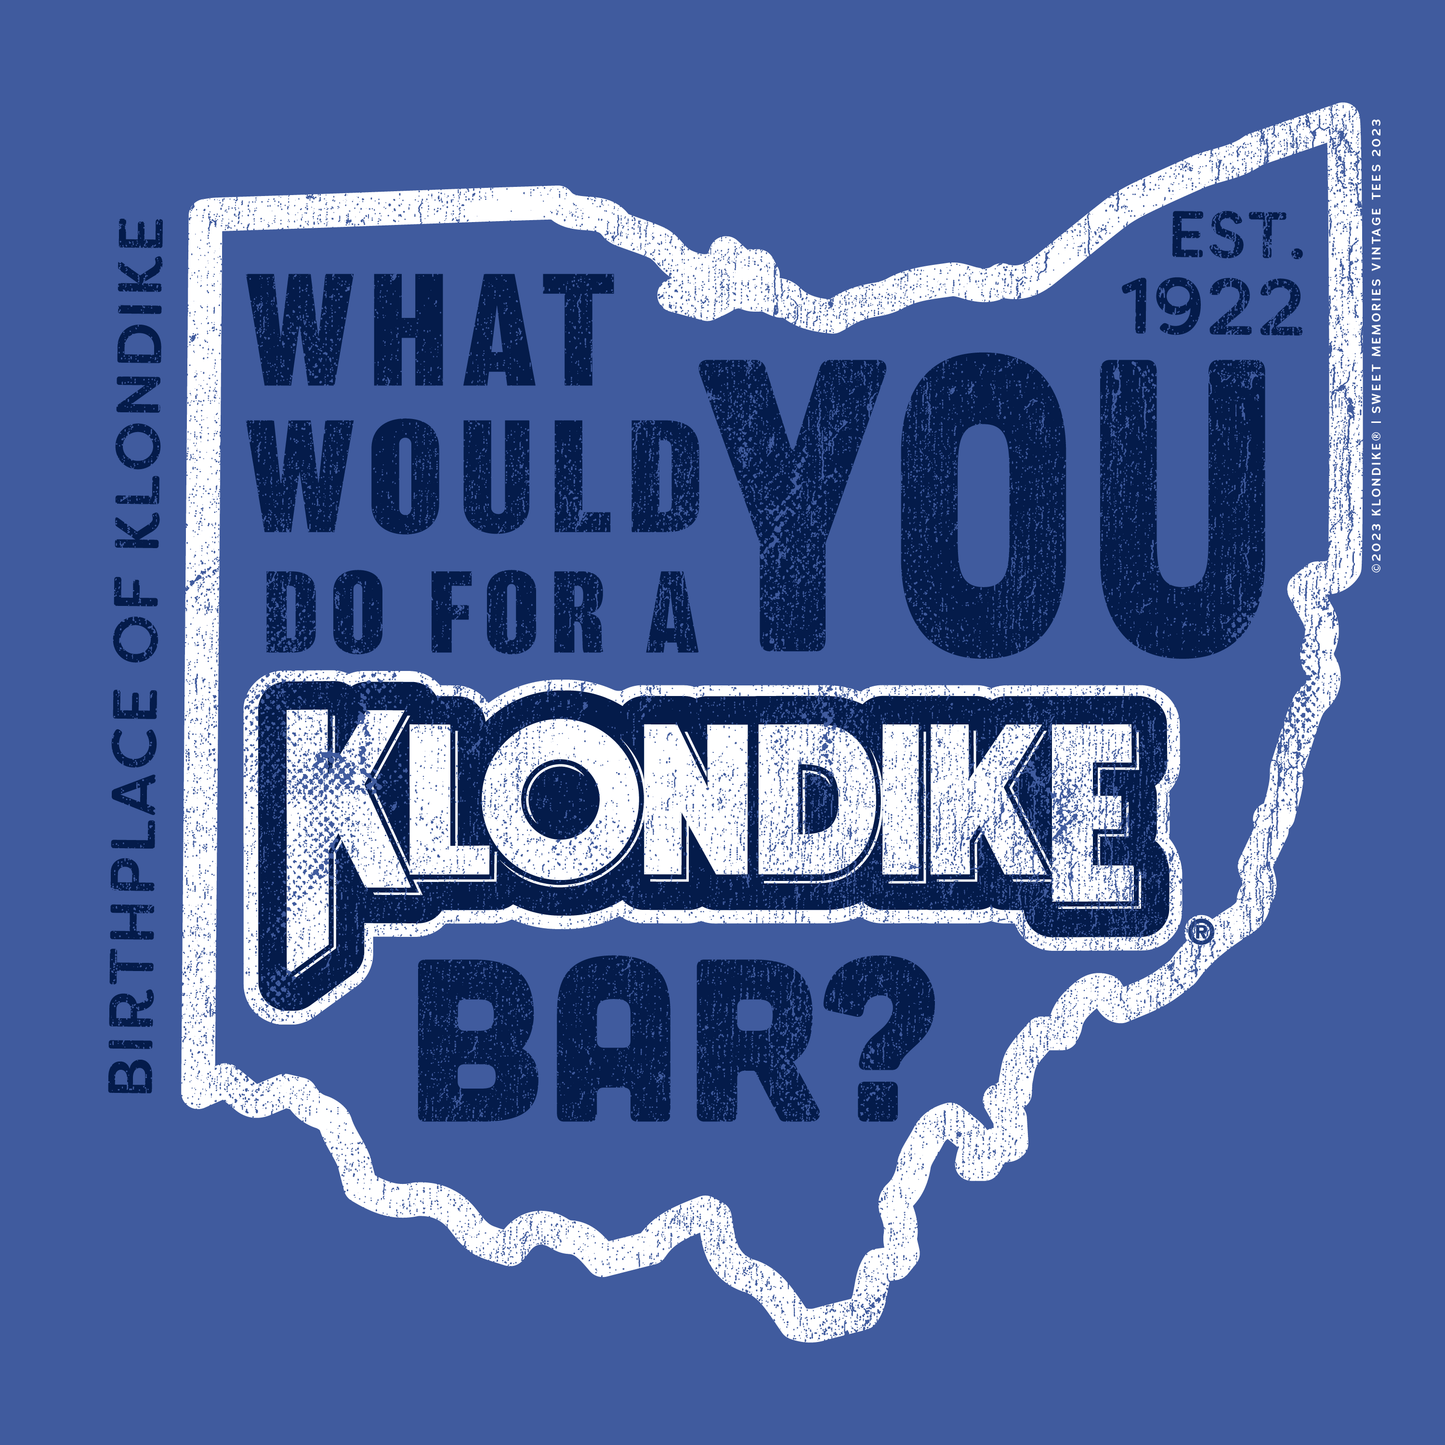 Klondike Birthplace of Klondike Ohio | What would you do for a Klondike Bar? Tee